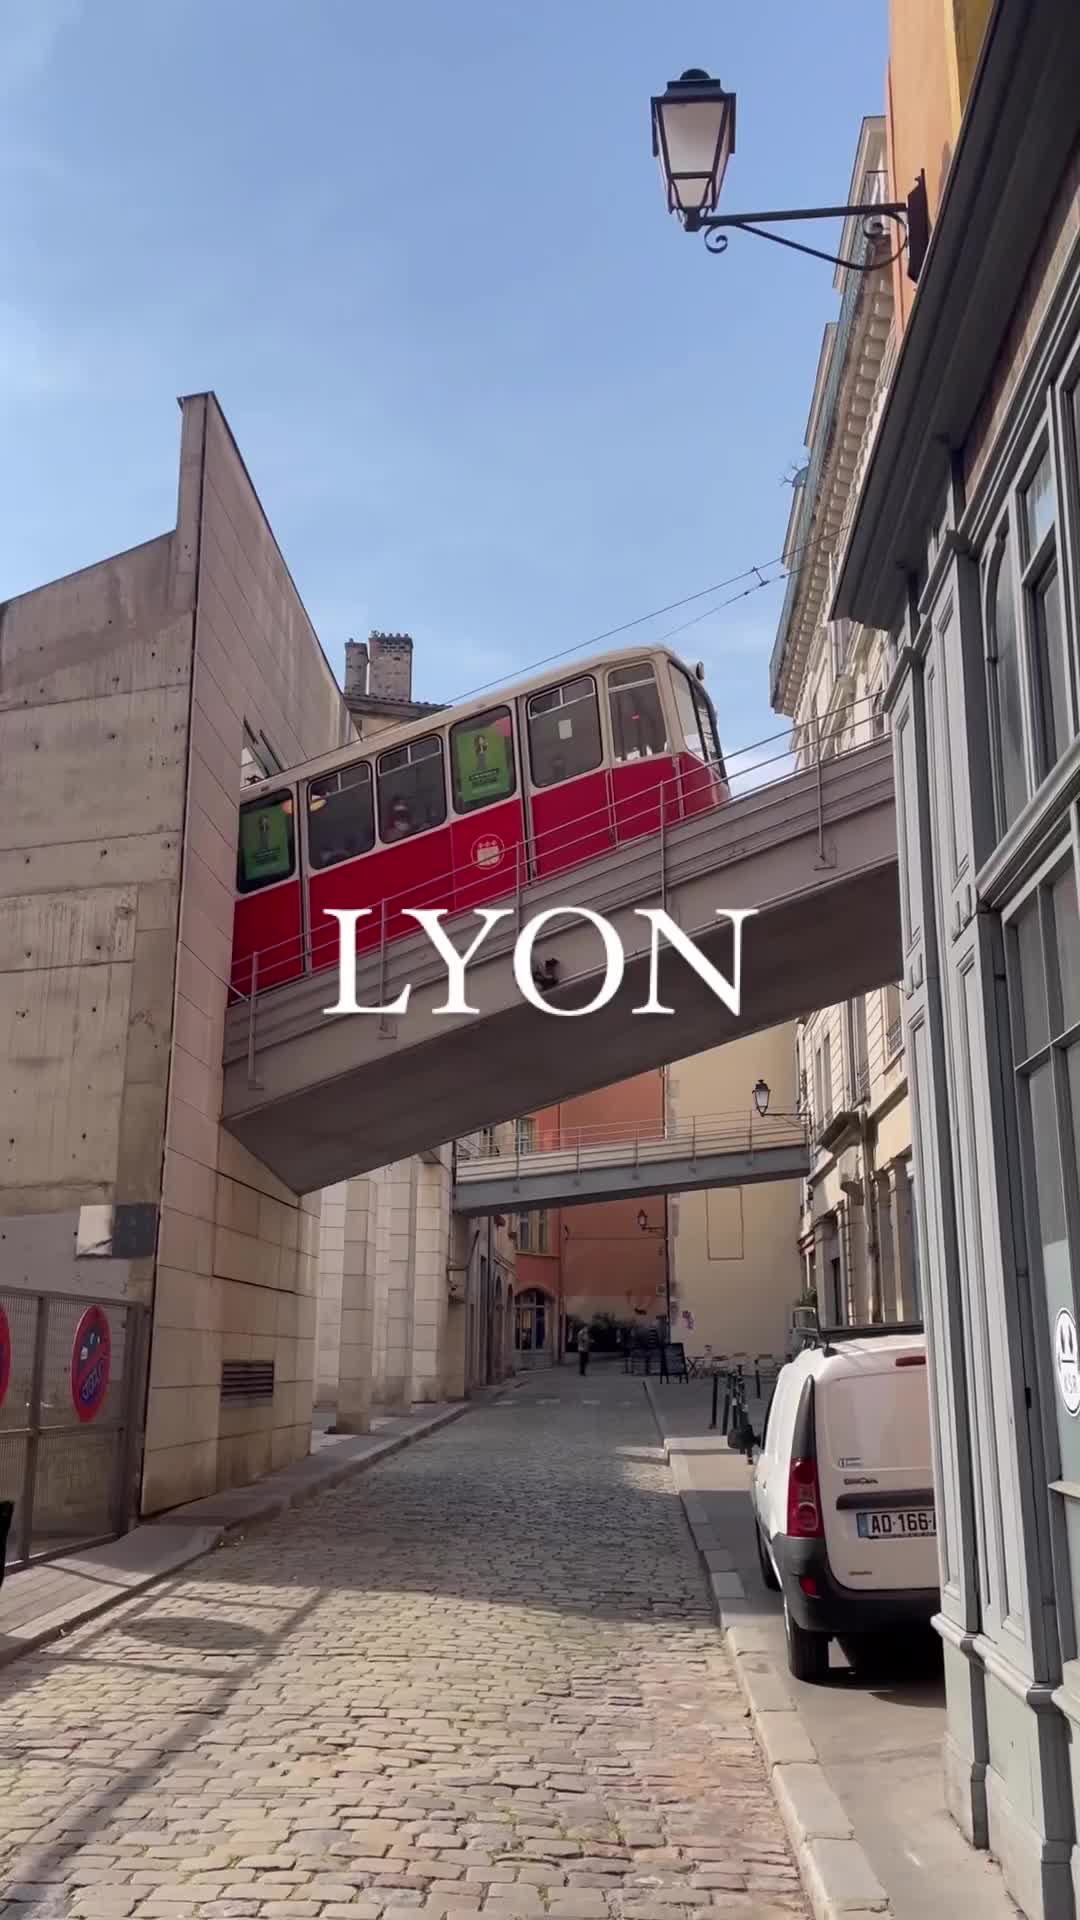 Lyon ❤️🇫🇷

Ville dynamique, Lyon est une ville riche de trésors architecturaux, culturels ou gastronomiques ! La Croix-Rousse, le Vieux-Lyon, Fourvière.. Vous en prendrez pleins les yeux ! 🤩

Avez-vous déjà visité Lyon ou prévu d’y aller bientôt? 🙂

_____________________________________

#lyon #lyoncity #lyonfrance #rhonealpes #auvergnerhonealpes #lyonmaville #frança #topfrancephoto #jaimelafrance #visitlafrance #suddelafrance #southoffrance #francetourisme #forbestravelguide #hello_france #visitfrance #travellingthroughtheworld #beautifuldestinations